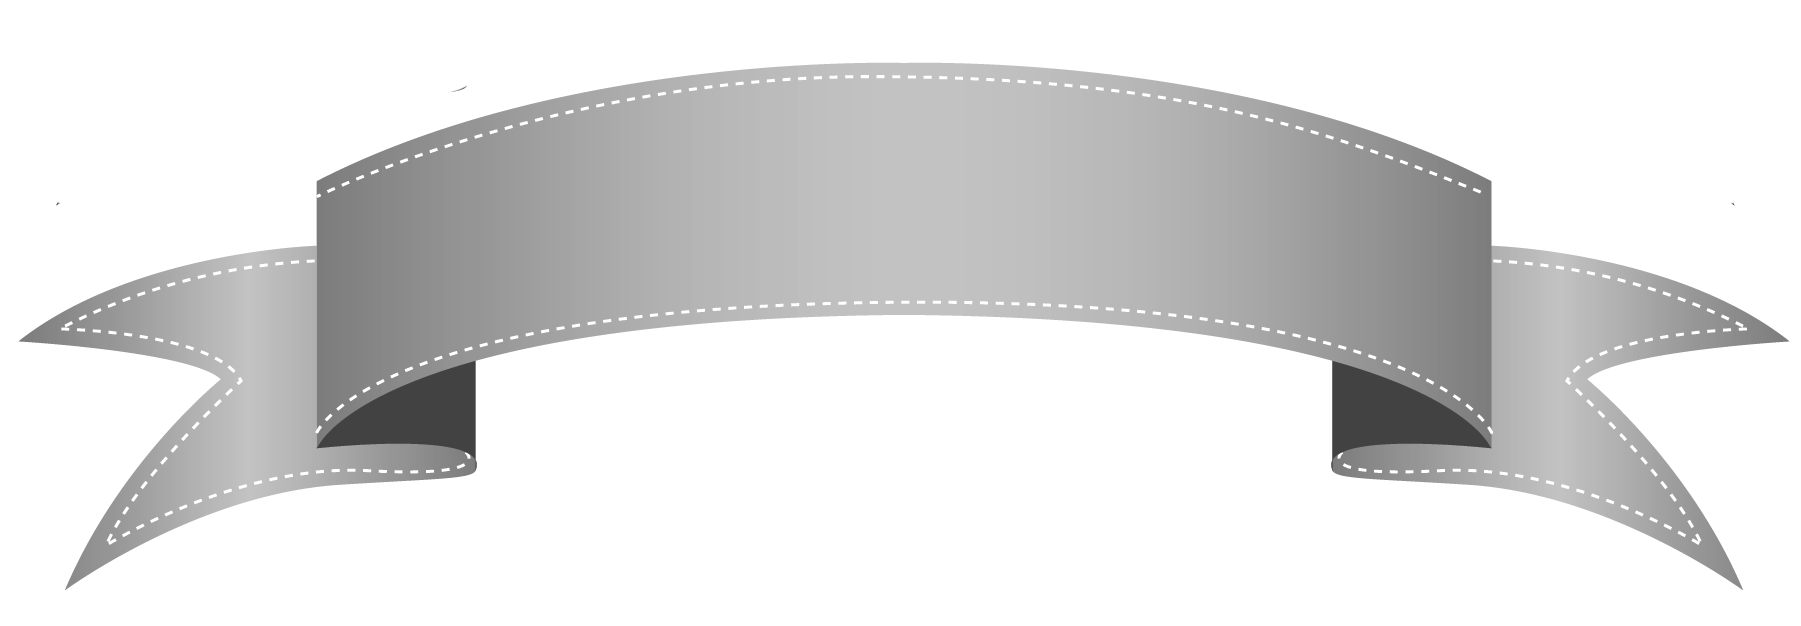 Grey Banner PNG Transparent Image